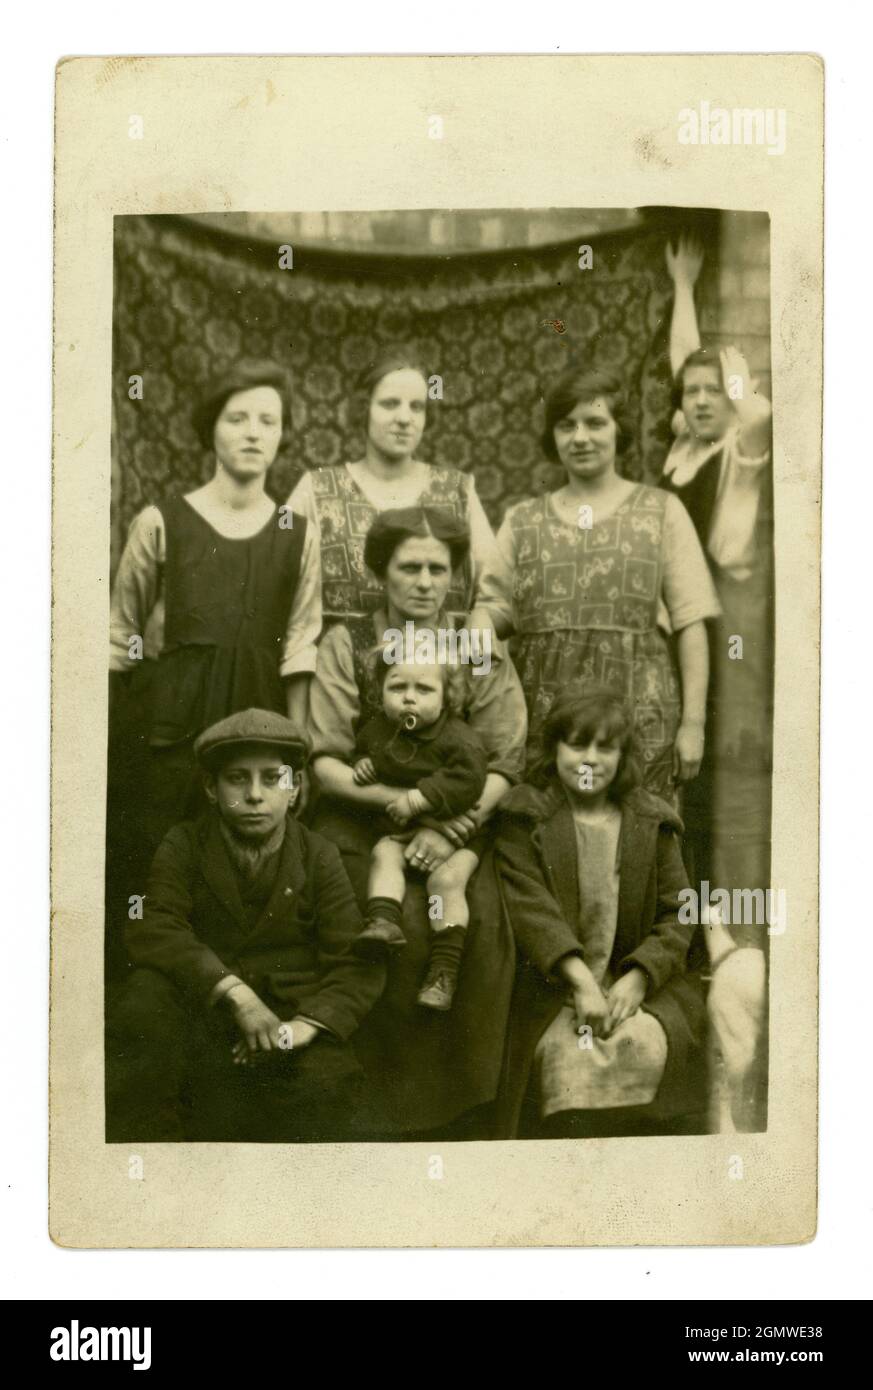 Carte postale originale du début des années 1920, portrait en plein air, toile de fond improvisée, mère de classe ouvrière, avec ses sœurs ou amis et enfants, personnages, Royaume-Uni Banque D'Images